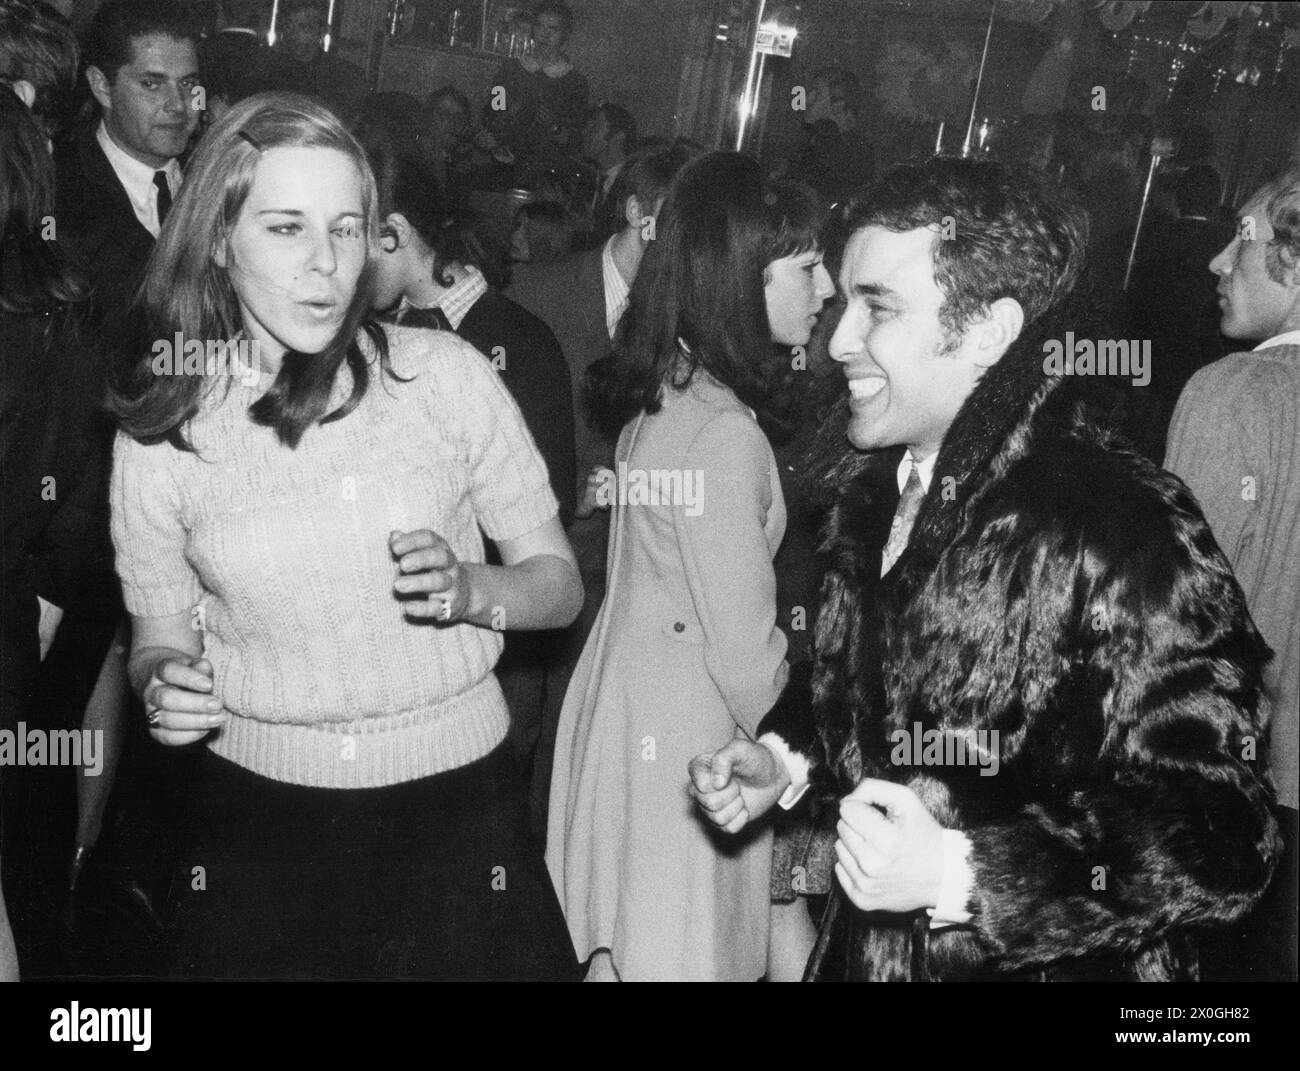 Une femme et un homme dansant dans une discothèque.(enregistrement non daté) [traduction automatique] Banque D'Images